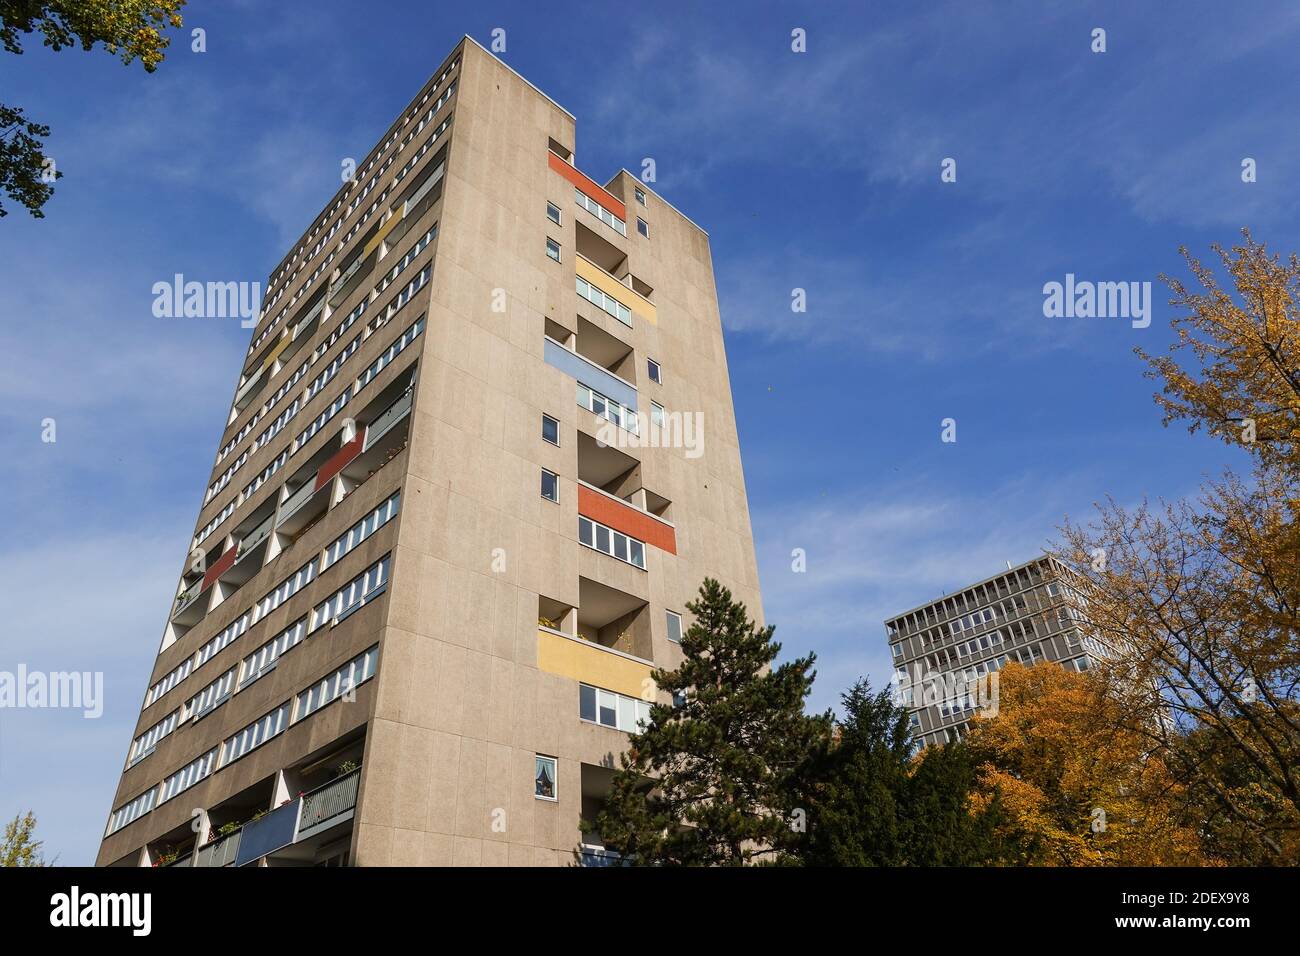 'Punkt'-Hochhaus (van den Broek / Bakema), Hansaviertel, Mitte, Berlin, Deutschland Stock Photo